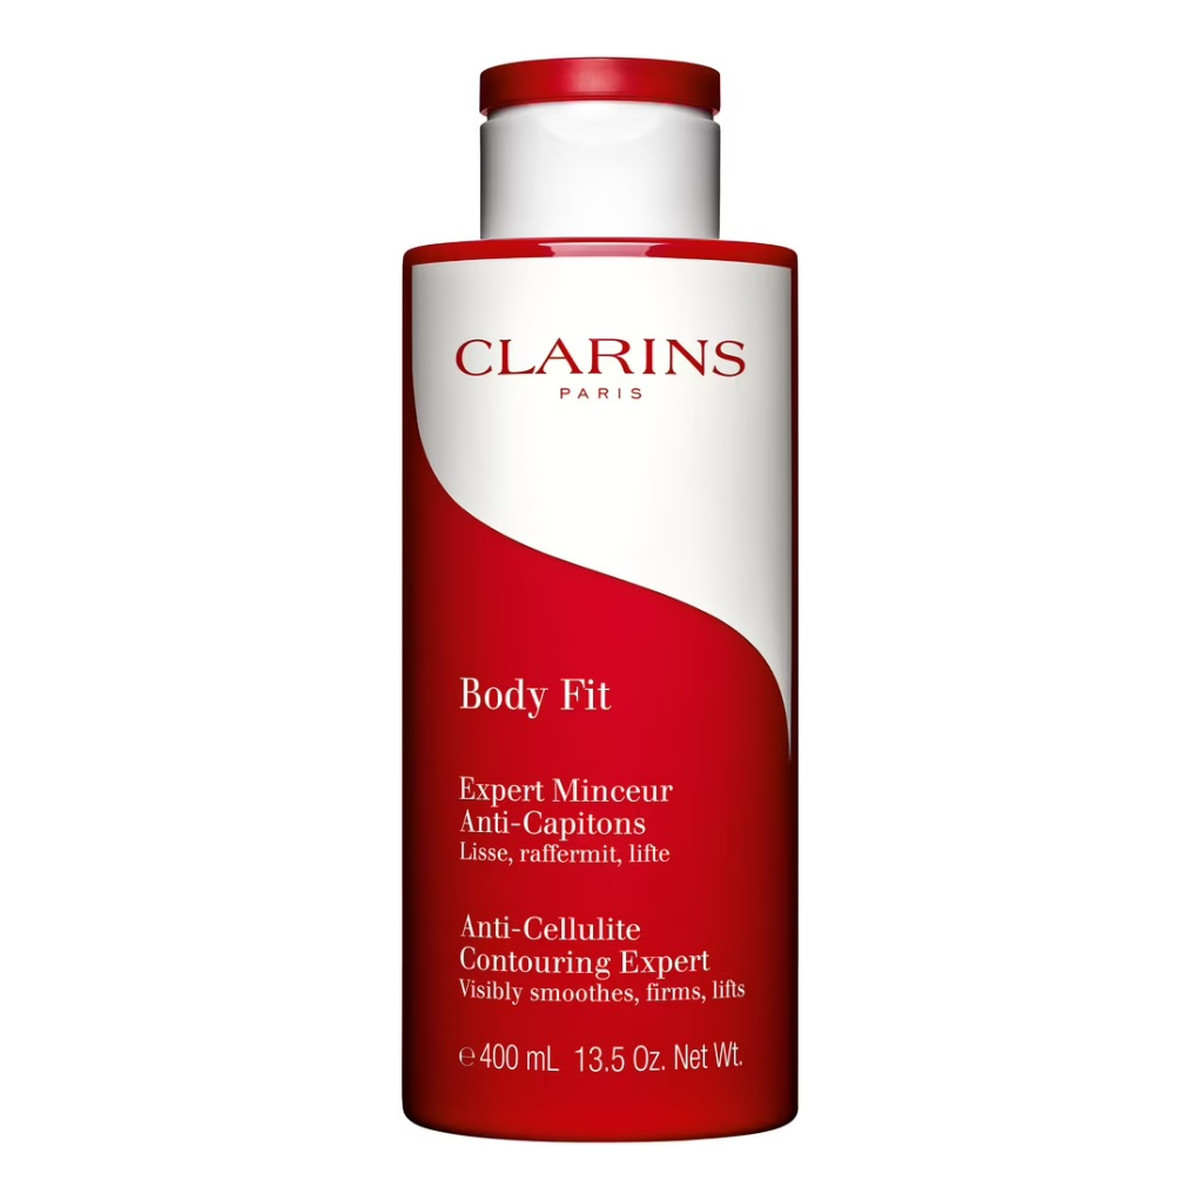 Clarins Body Fit Anti-Celluite Contouring Expert Balsam ujędrniający przeciw cellulitowi 400ml